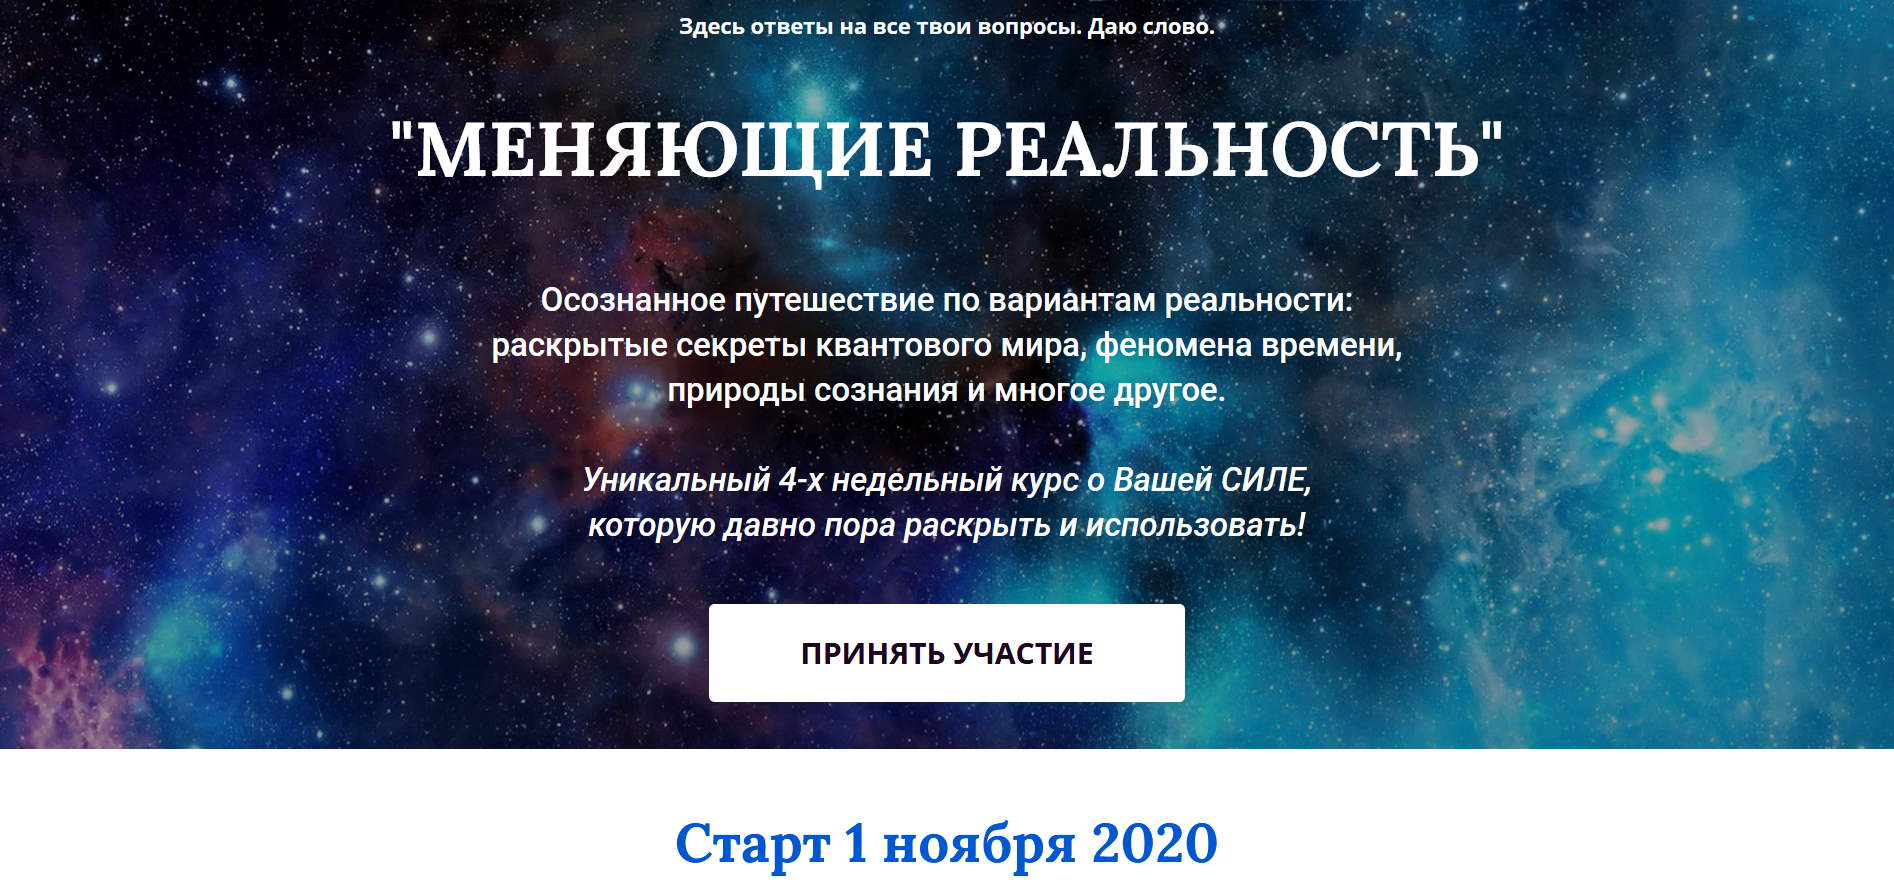 Firefox_Screenshot_2020-10-13T12-42-03.725Z.png